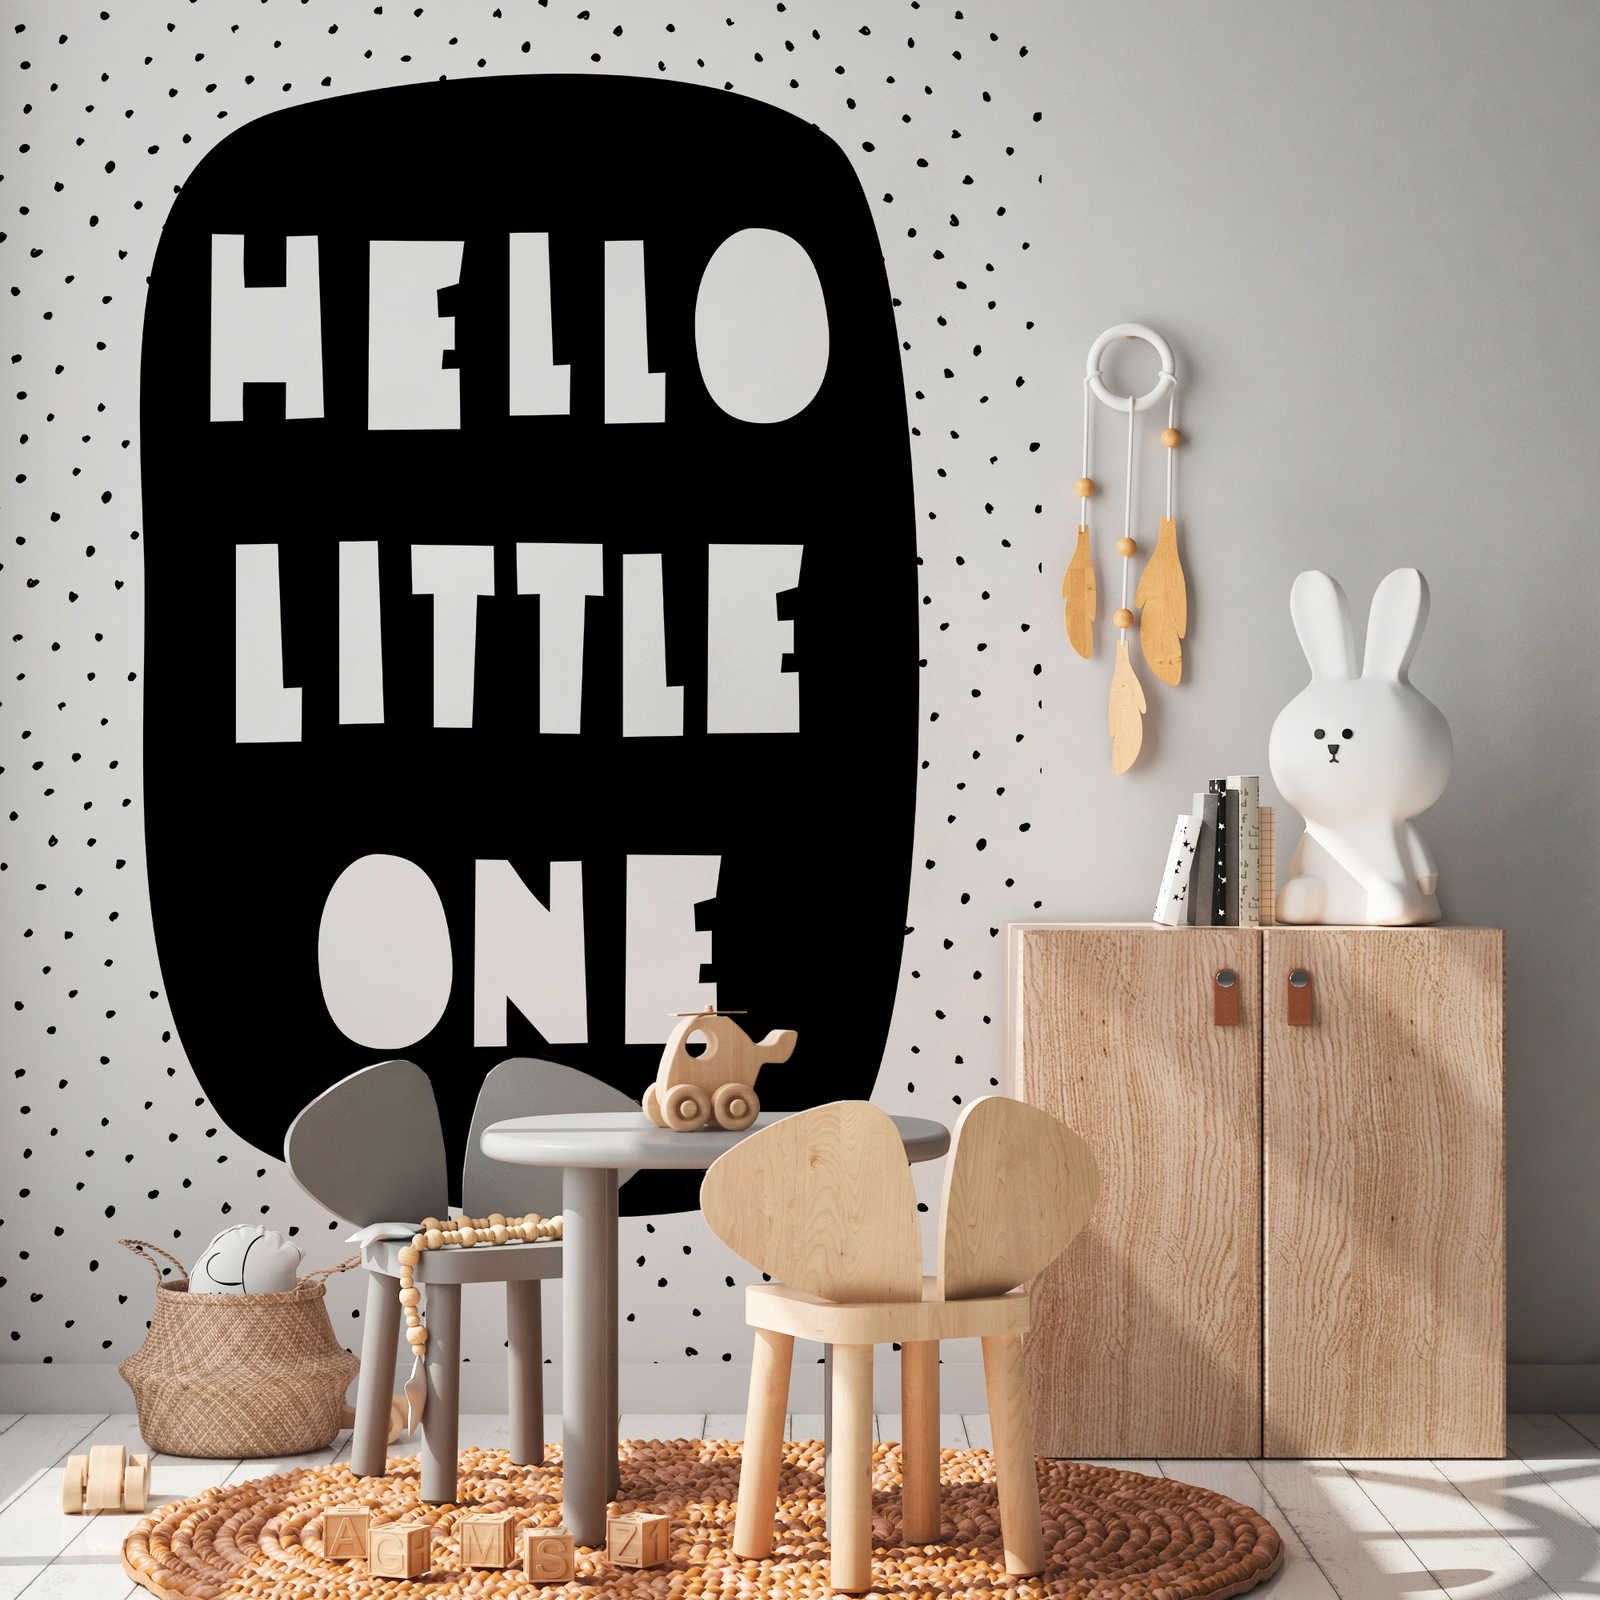 Fotomural para habitación infantil con letras "Hello Little One" - Material sin tejer liso y mate
